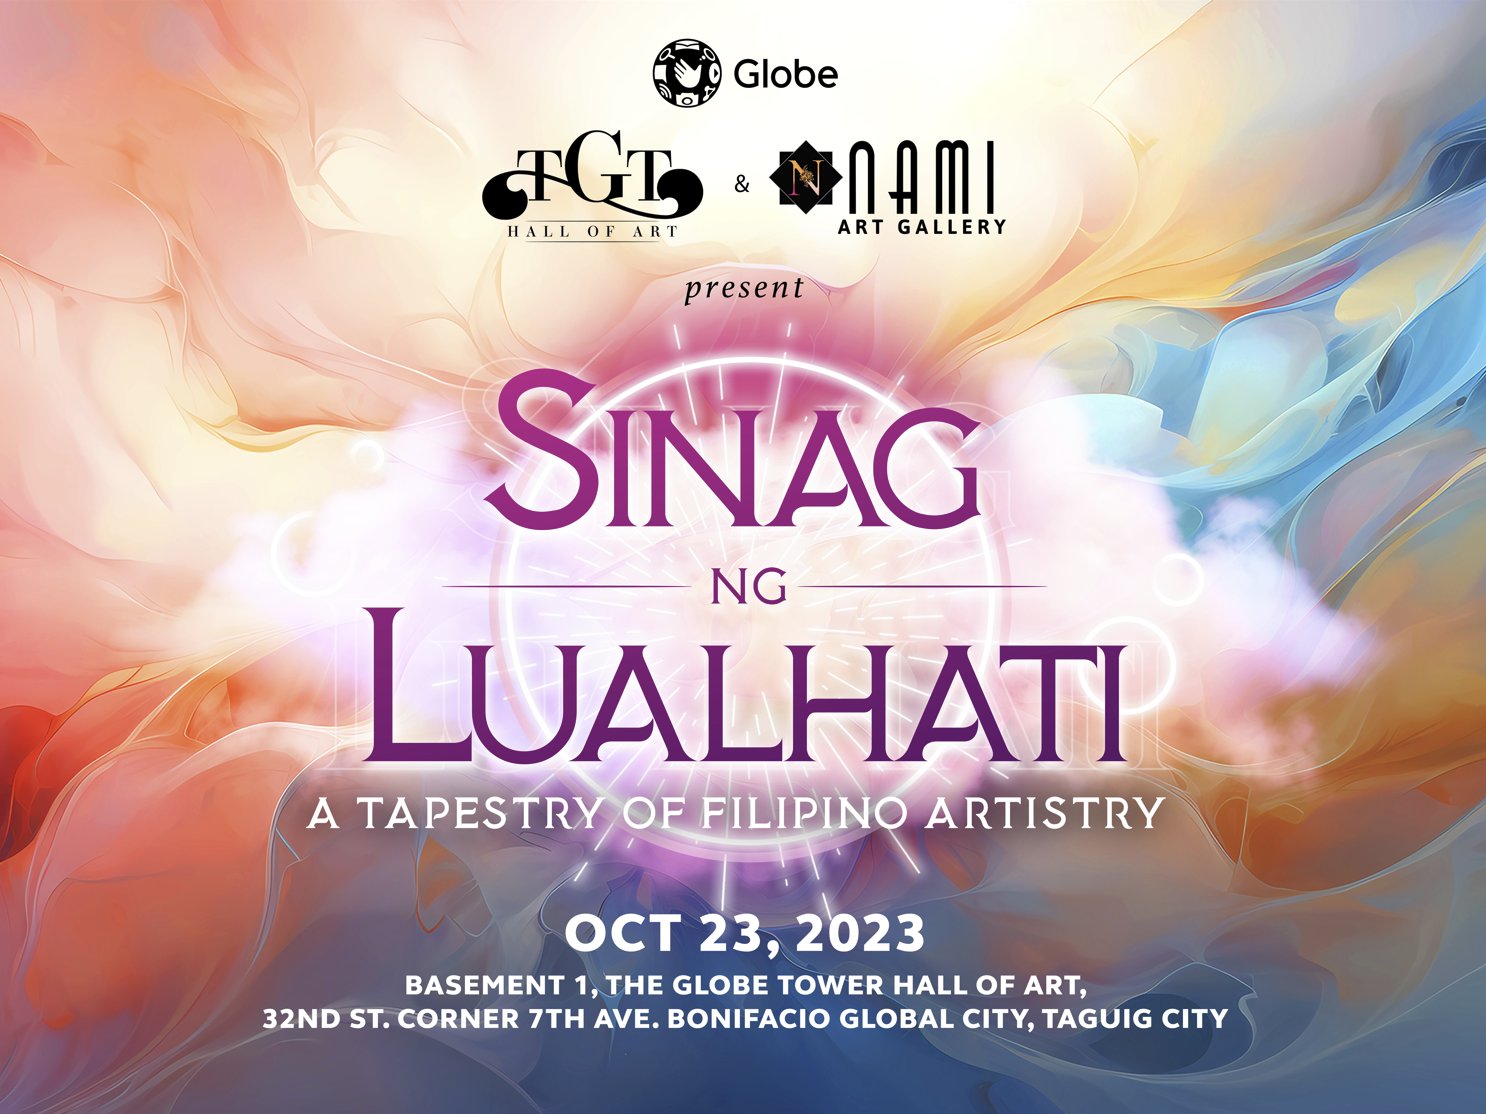 Sinag ng Lualhati: A Tapestry of Filipino Artistry